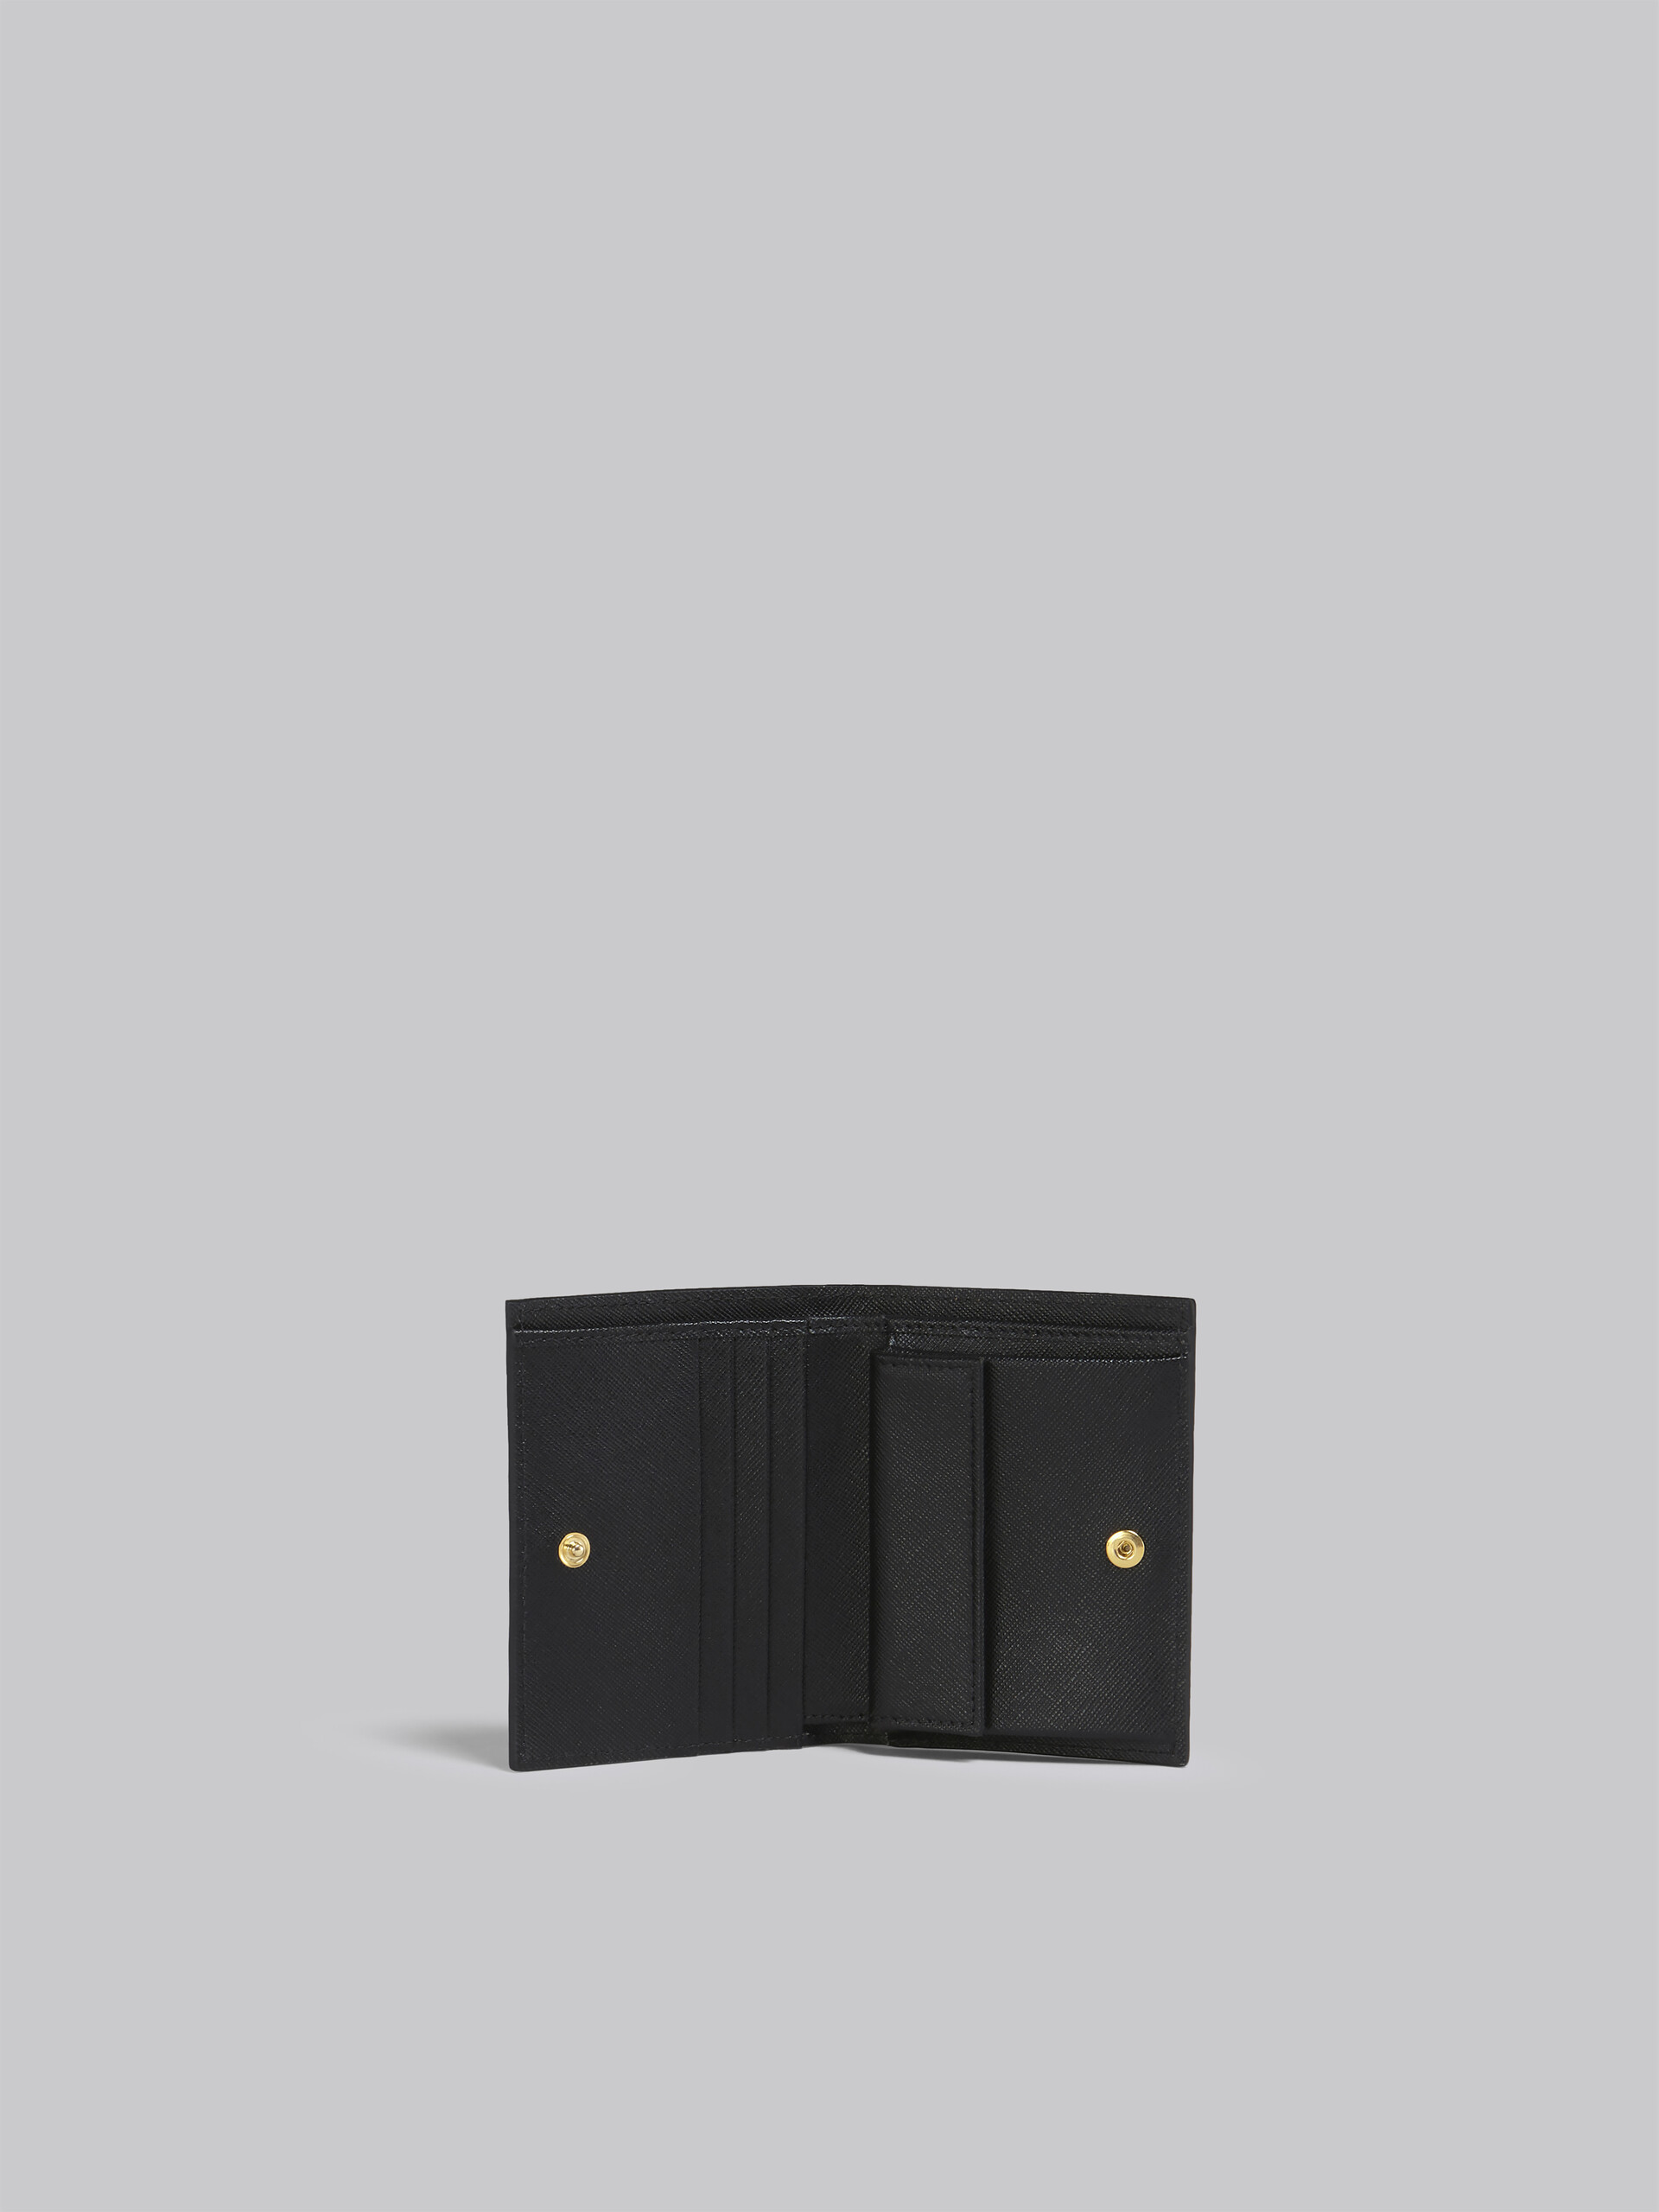 ブラウン ライラック ブラック サフィアーノレザー製 二つ折りウォレット - 財布 - Image 2